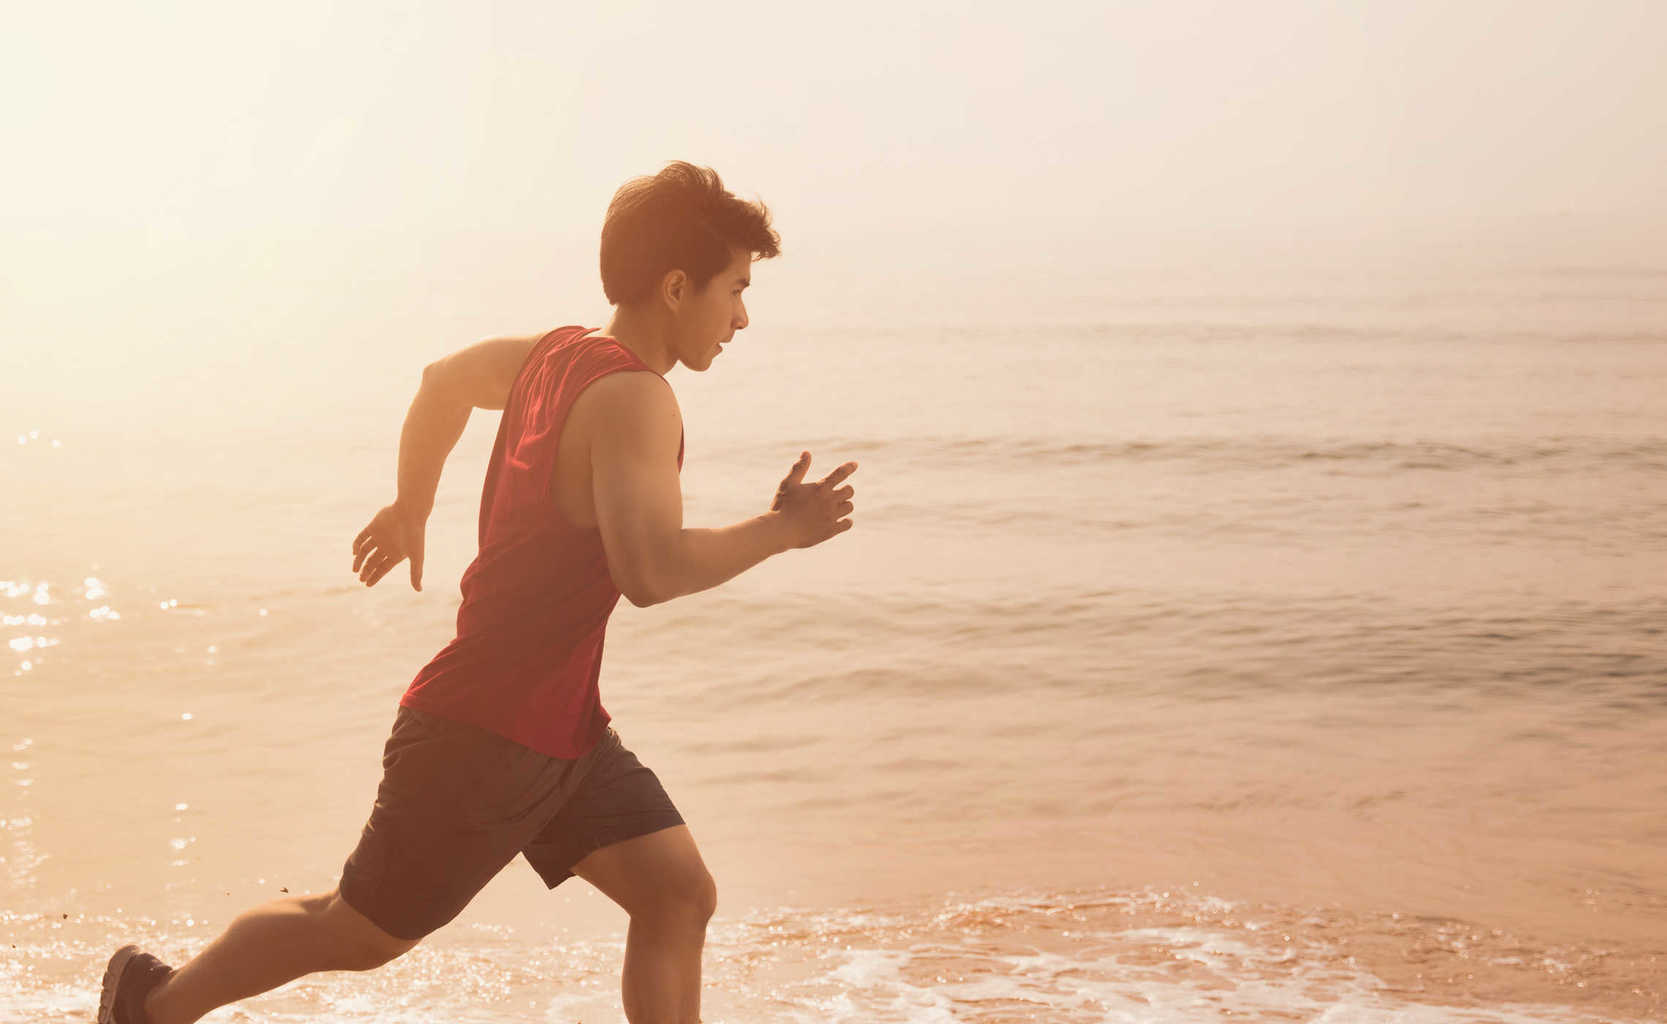 ออกกำลังกายตอนเช้าหรือออกกำลังกายตอนเย็น แบบไหนดีกว่ากัน?